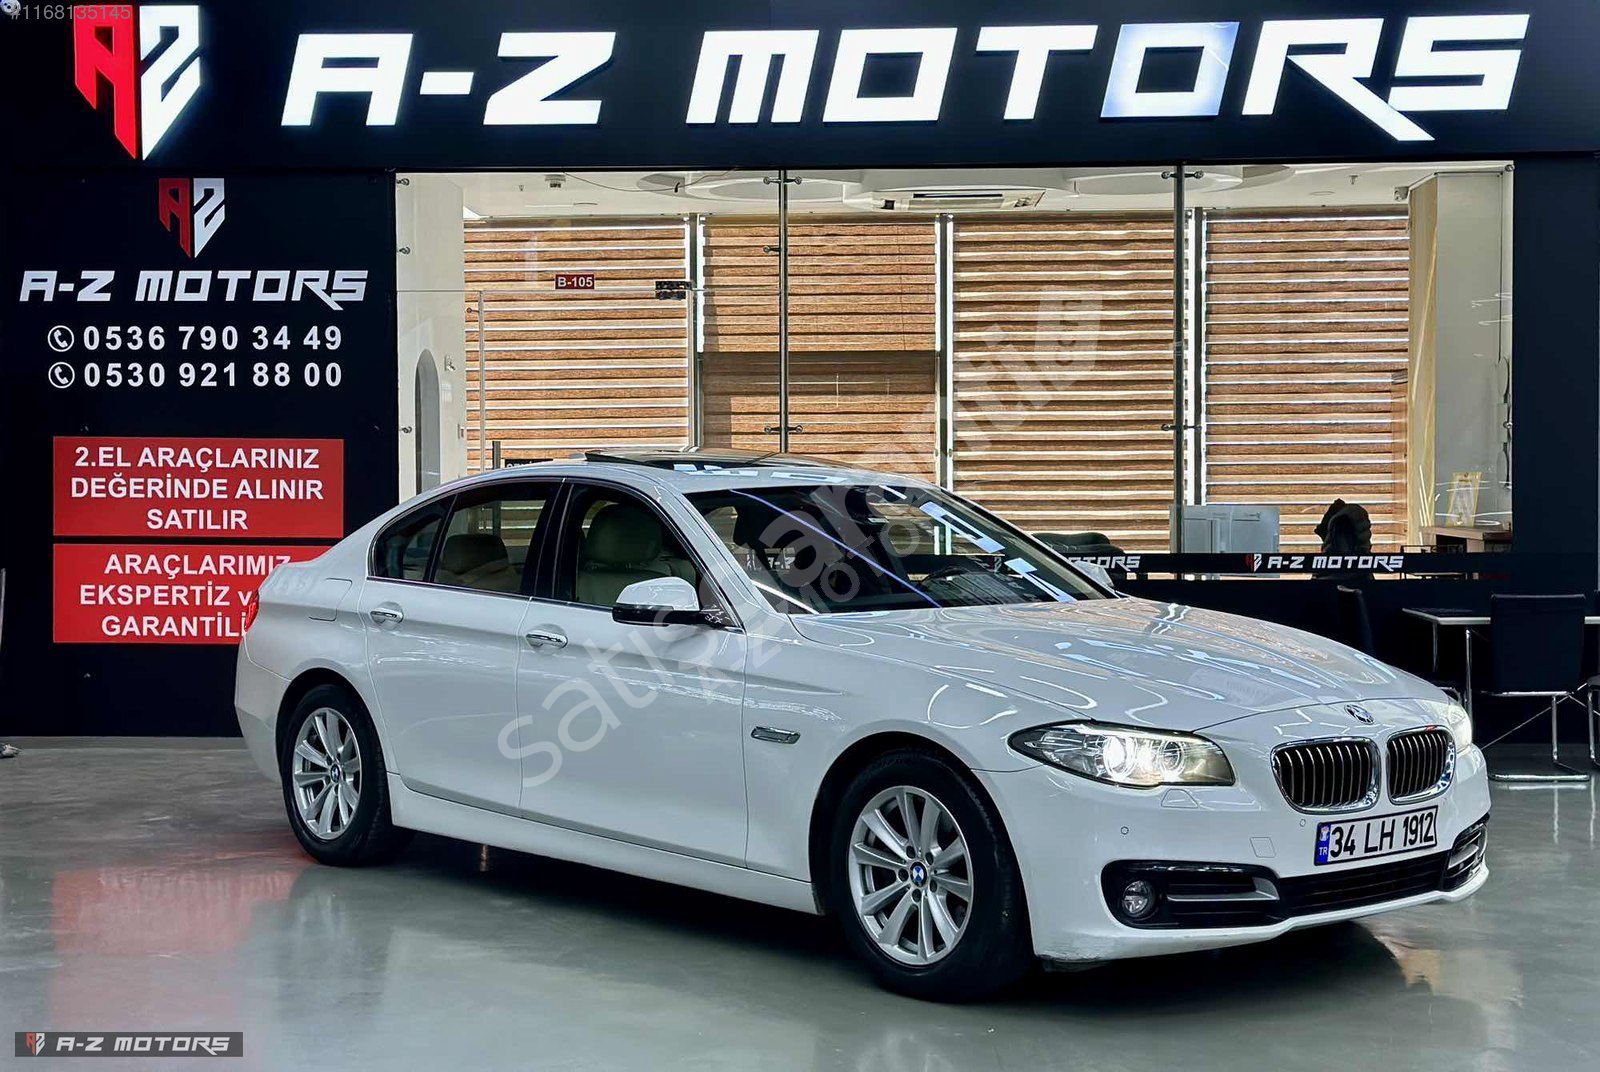 A-Z MOTORS'DAN 2014 BMW 520İ HATASIZ BOYASIZ 135.000 KM EMSALSİZ